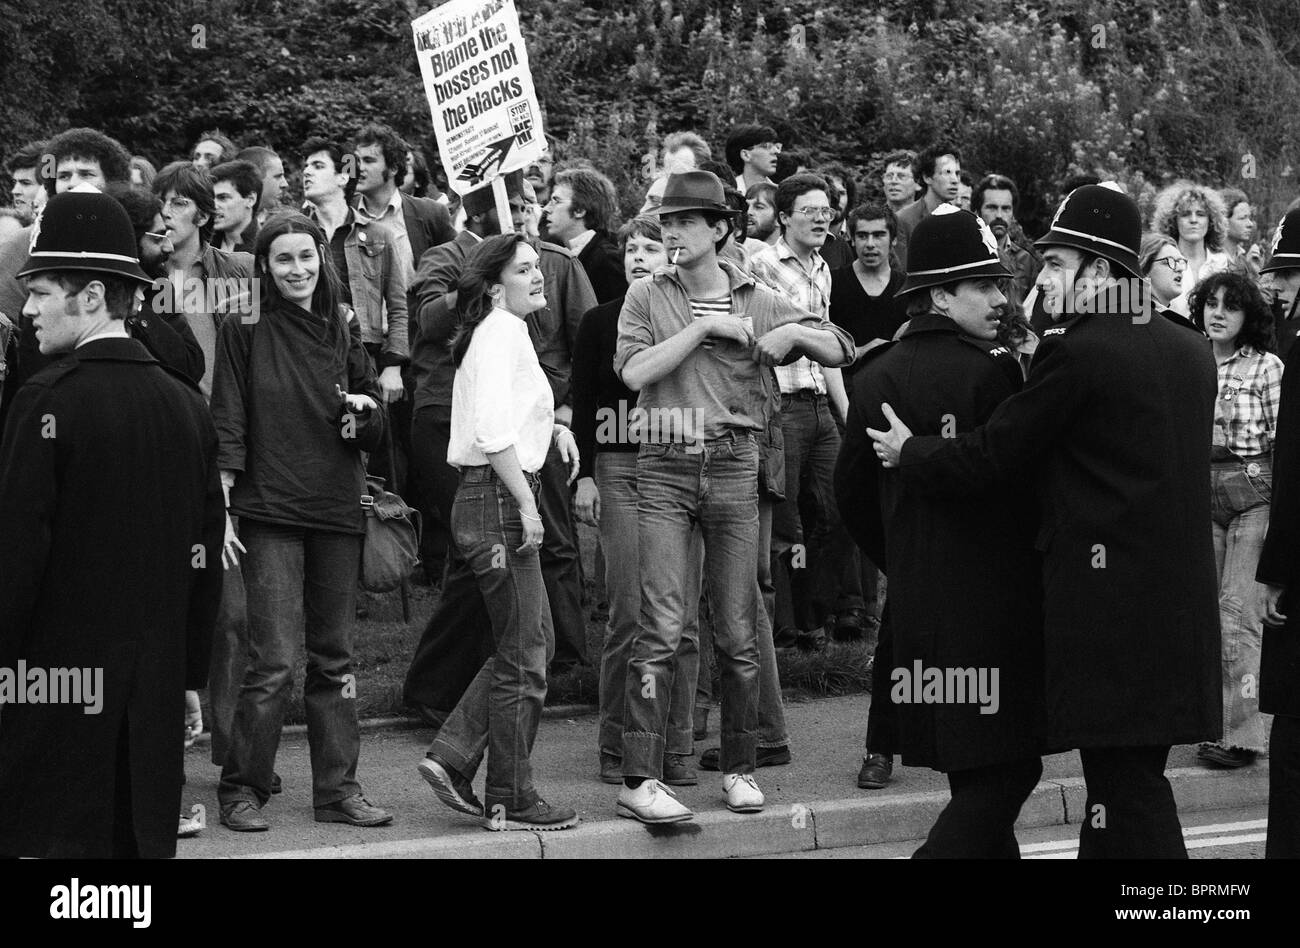 Anti-faschistische Anhänger gegen die Front National marsch in Nuneaton Sonntag, 1980. August Bild von DAVID BAGNALL. Anti-rassistischer Rassismus Protest Großbritannien Großbritannien 1980s Stockfoto